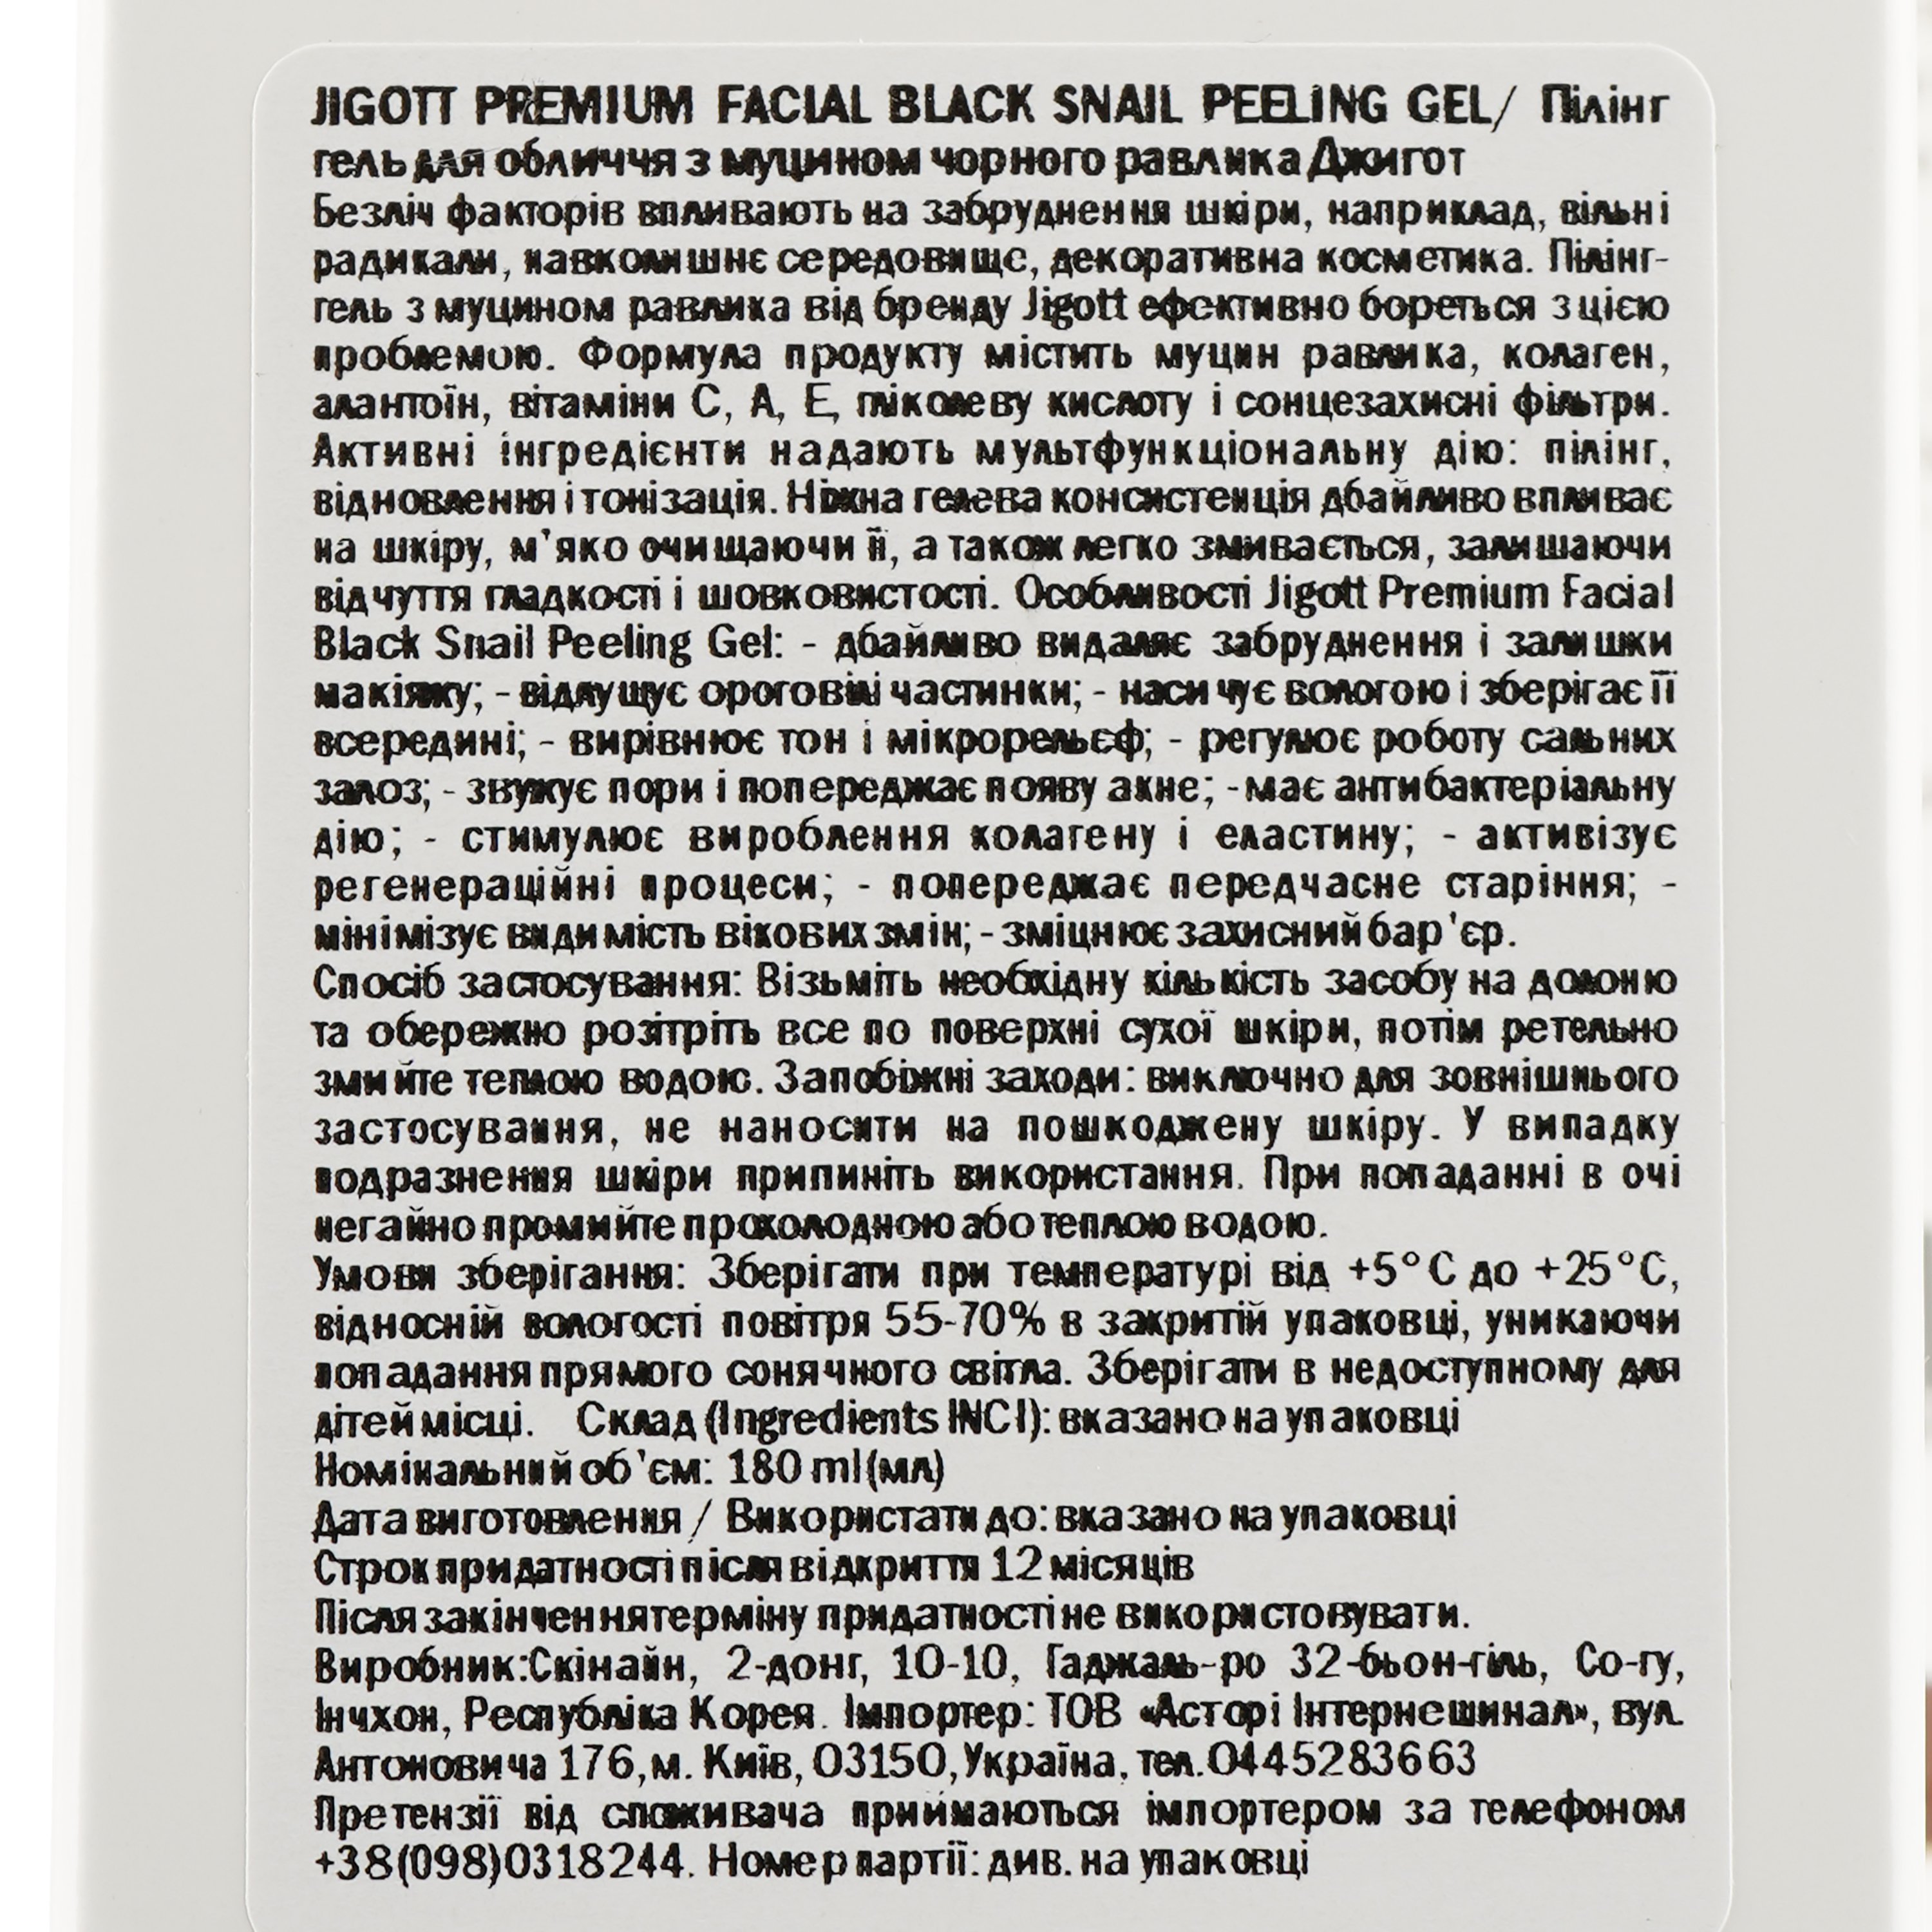 Пілінг-гель для обличчя Jigott Premium Facial Black Snail Peeling Gel з муцином чорного равлика, 180 мл - фото 3